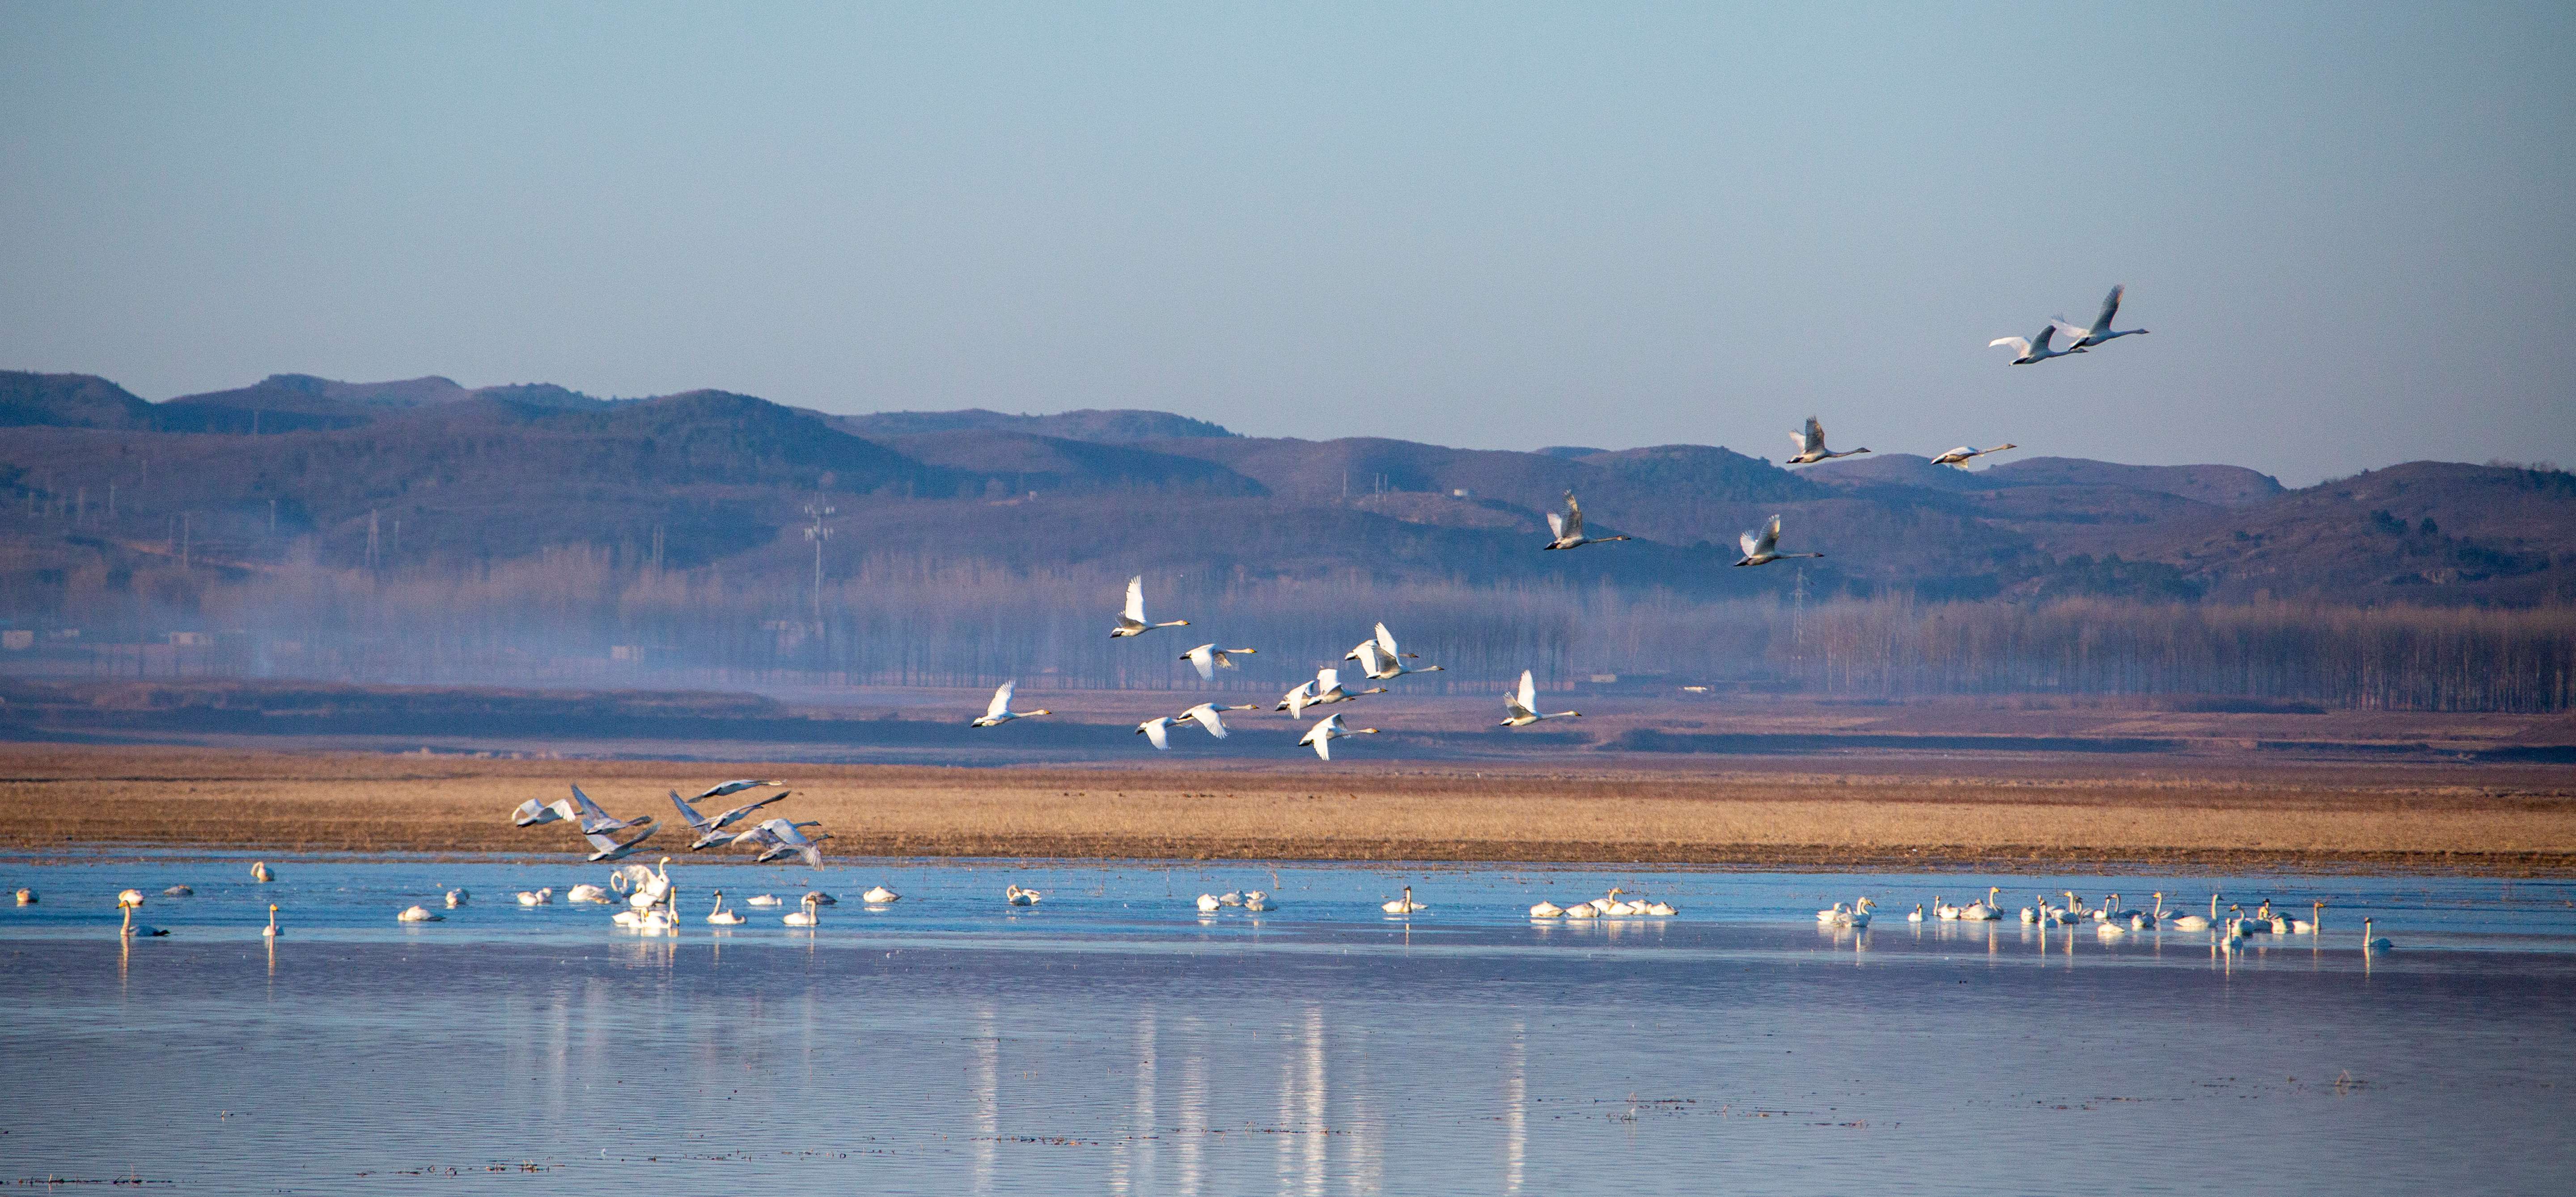 每年春季,白天鹅从南方迁徙至北票白石湿地栖息 (摄影:张旭)